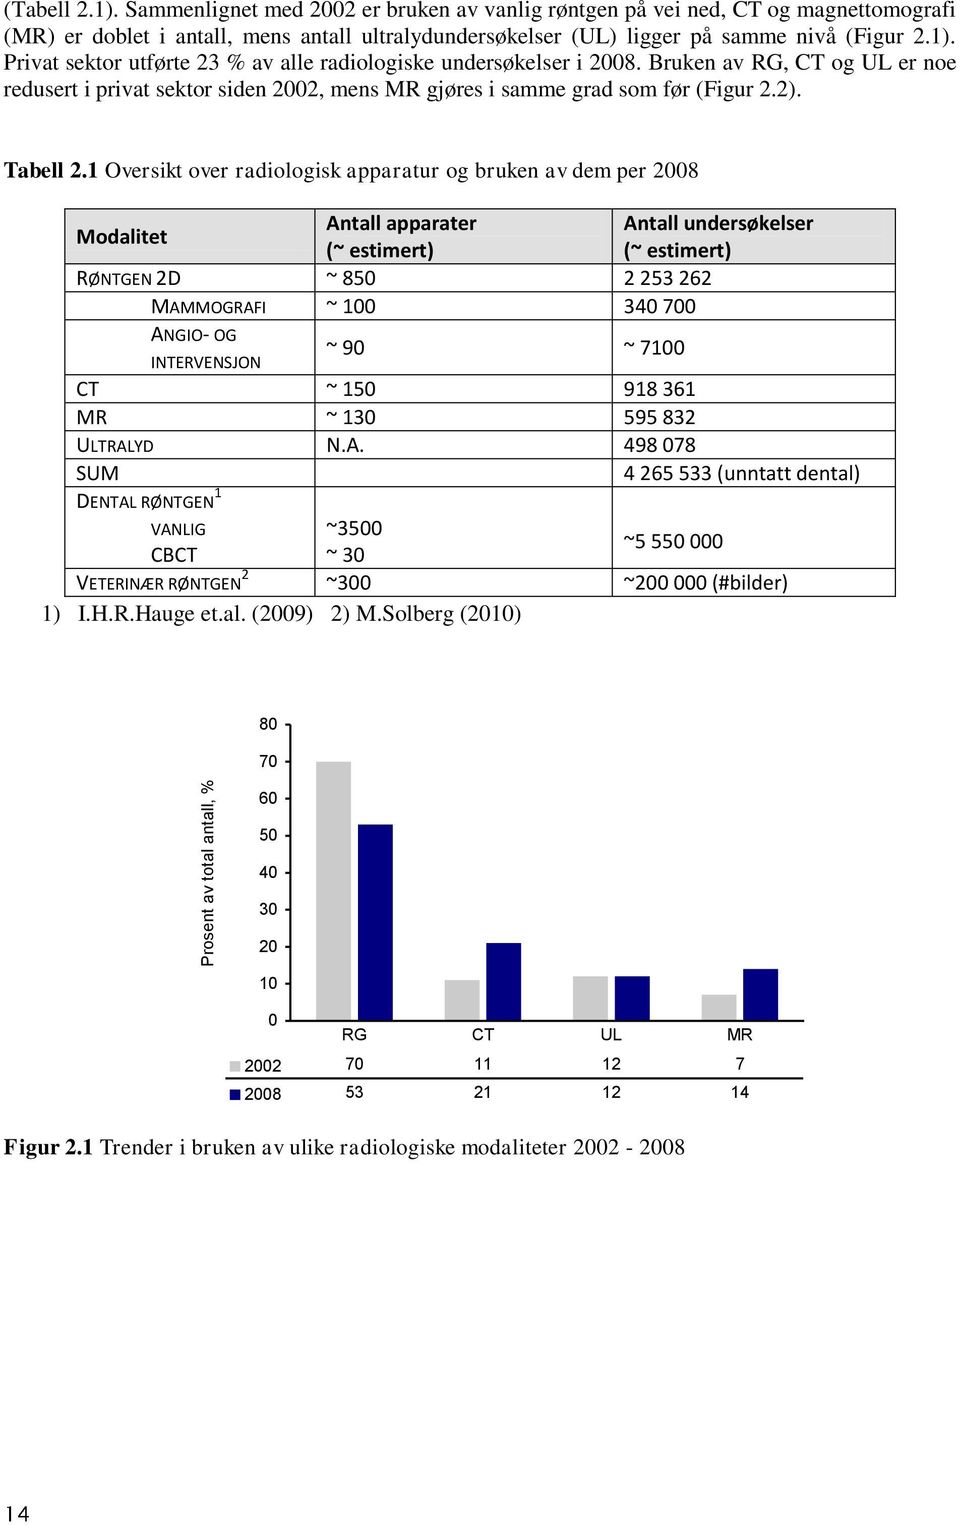 Privat sektor utførte 23 % av alle radiologiske undersøkelser i 2008. Bruken av RG, CT og UL er noe redusert i privat sektor siden 2002, mens MR gjøres i samme grad som før (Figur 2.2). Tabell 2.